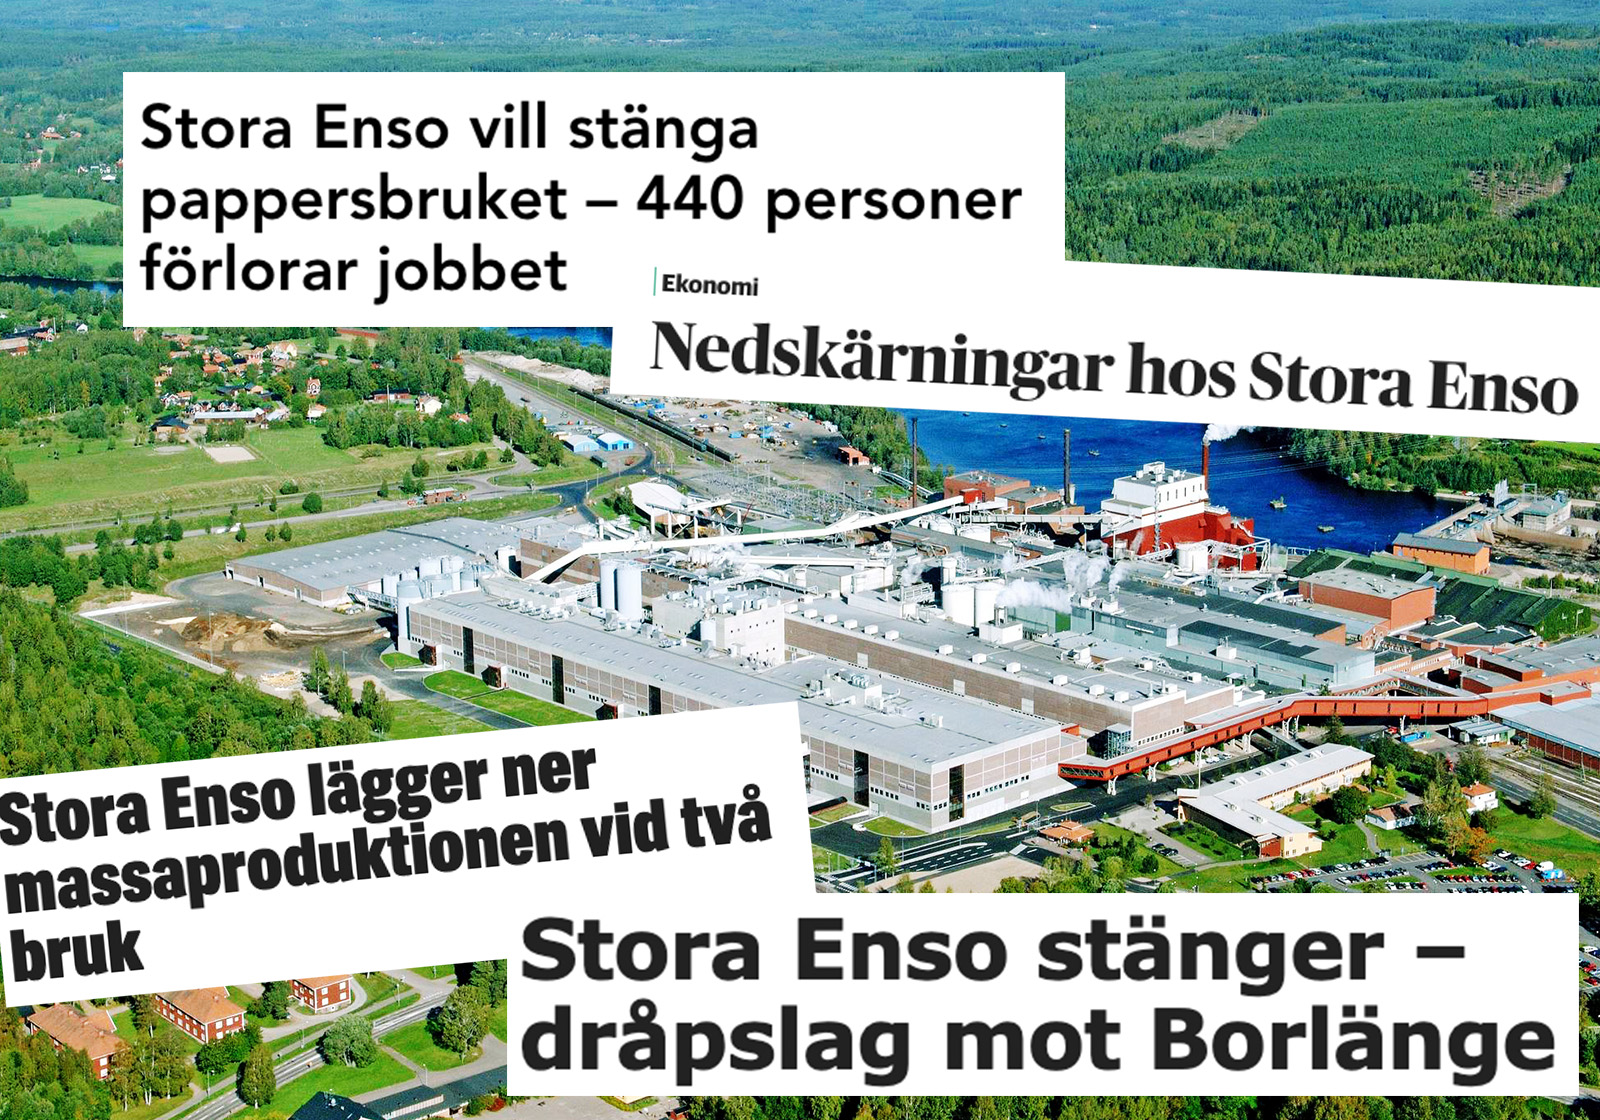 Pappersbruket Kvarnsveden i Borlänge som ska läggas ner. 